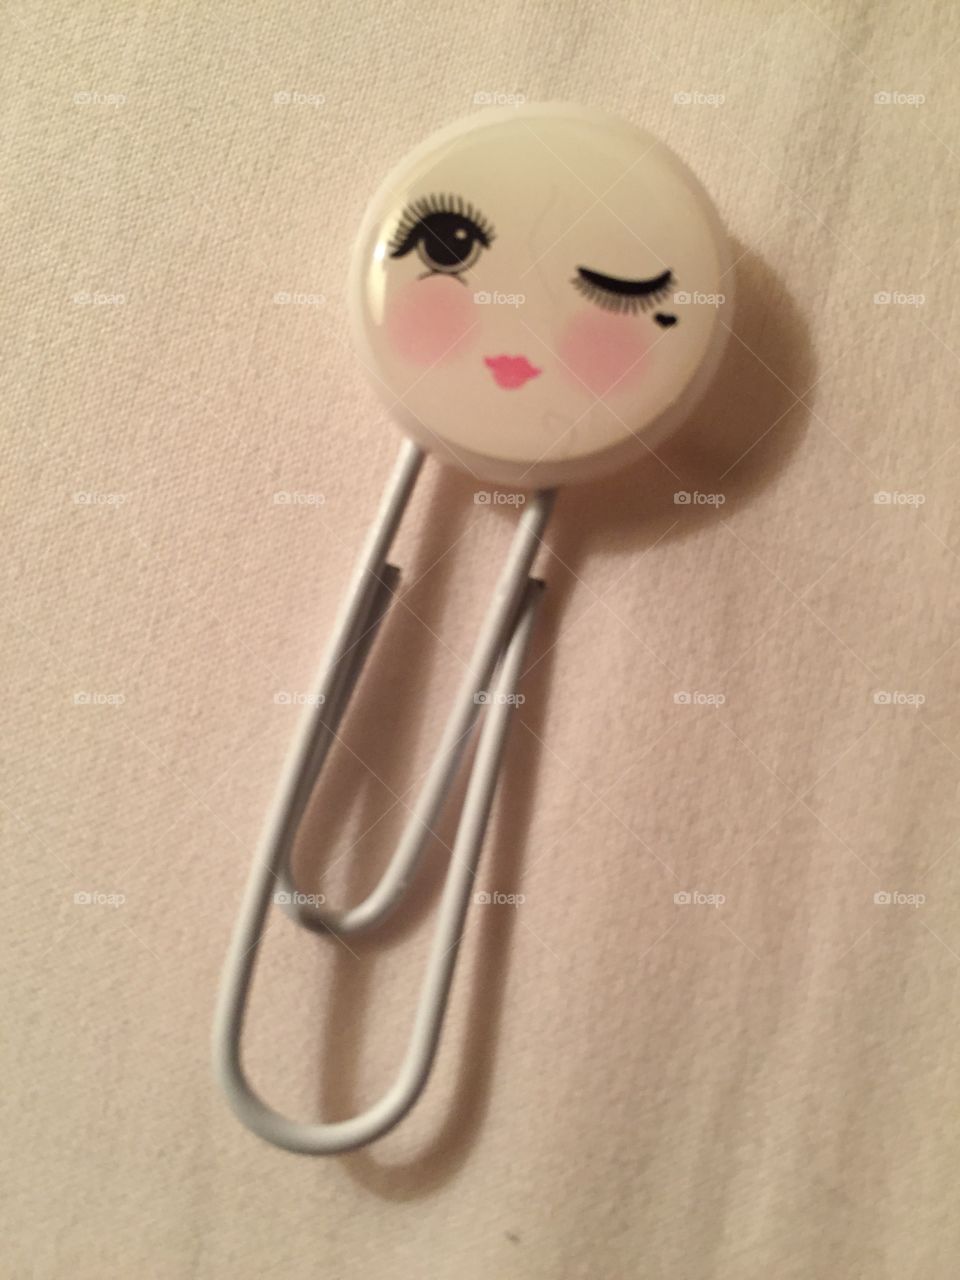 A cute and feminine paper clip